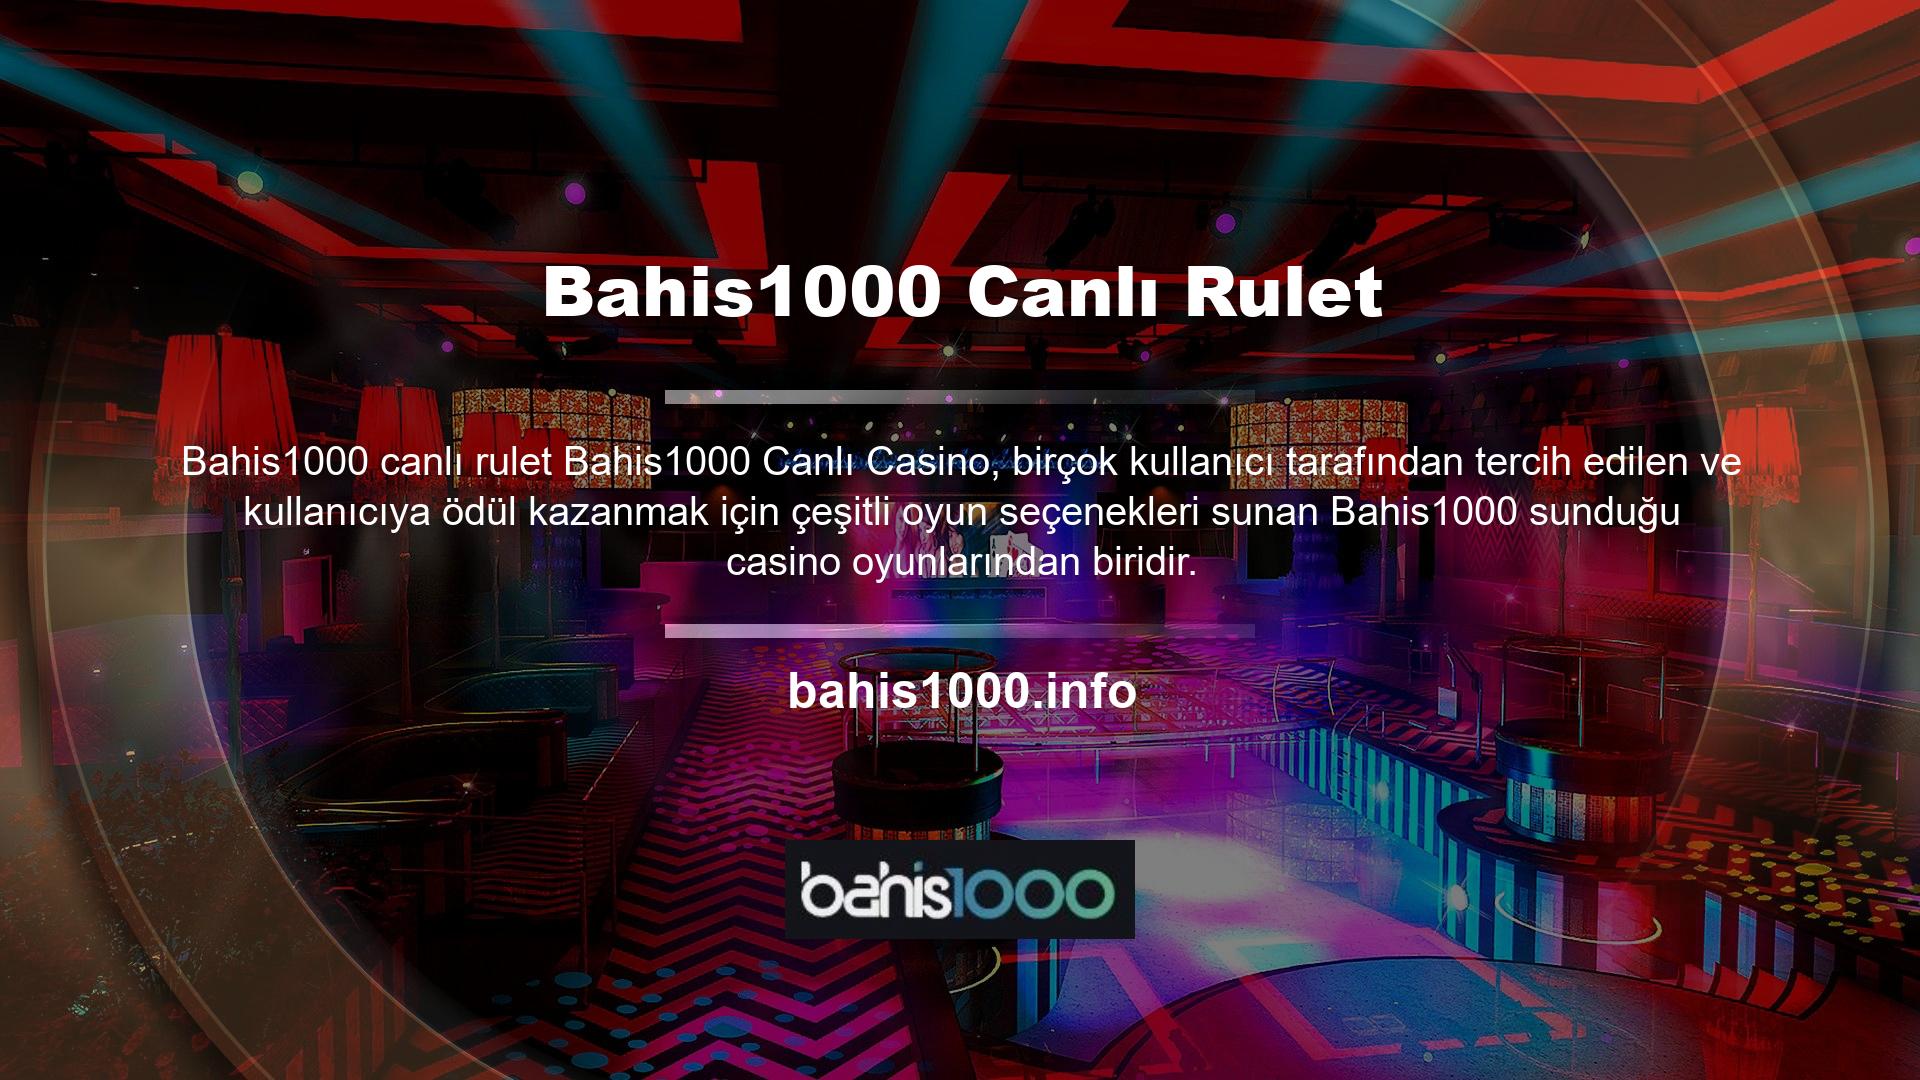 Bu seçeneklerden biri de casinoların vazgeçilmezi haline gelen canlı rulet oynama imkanı sunan Bahis1000 Canlı Ruleti'dir